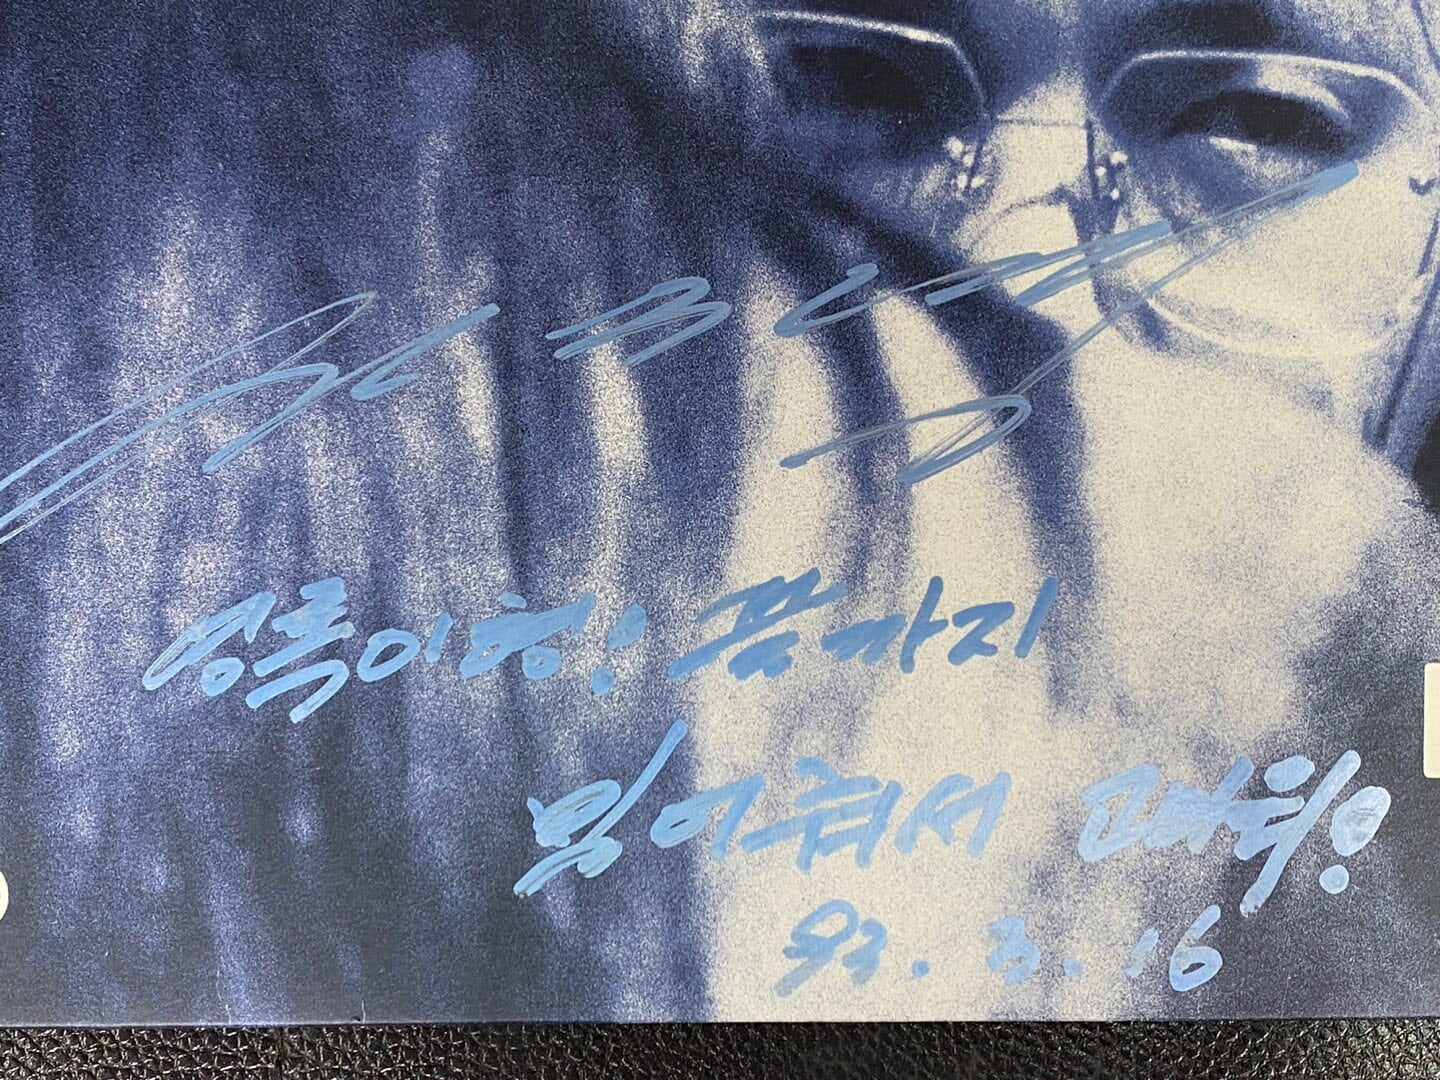 [LP] 전진영 - The Blue Love LP [싸인LP] [서울-SPDR-341]